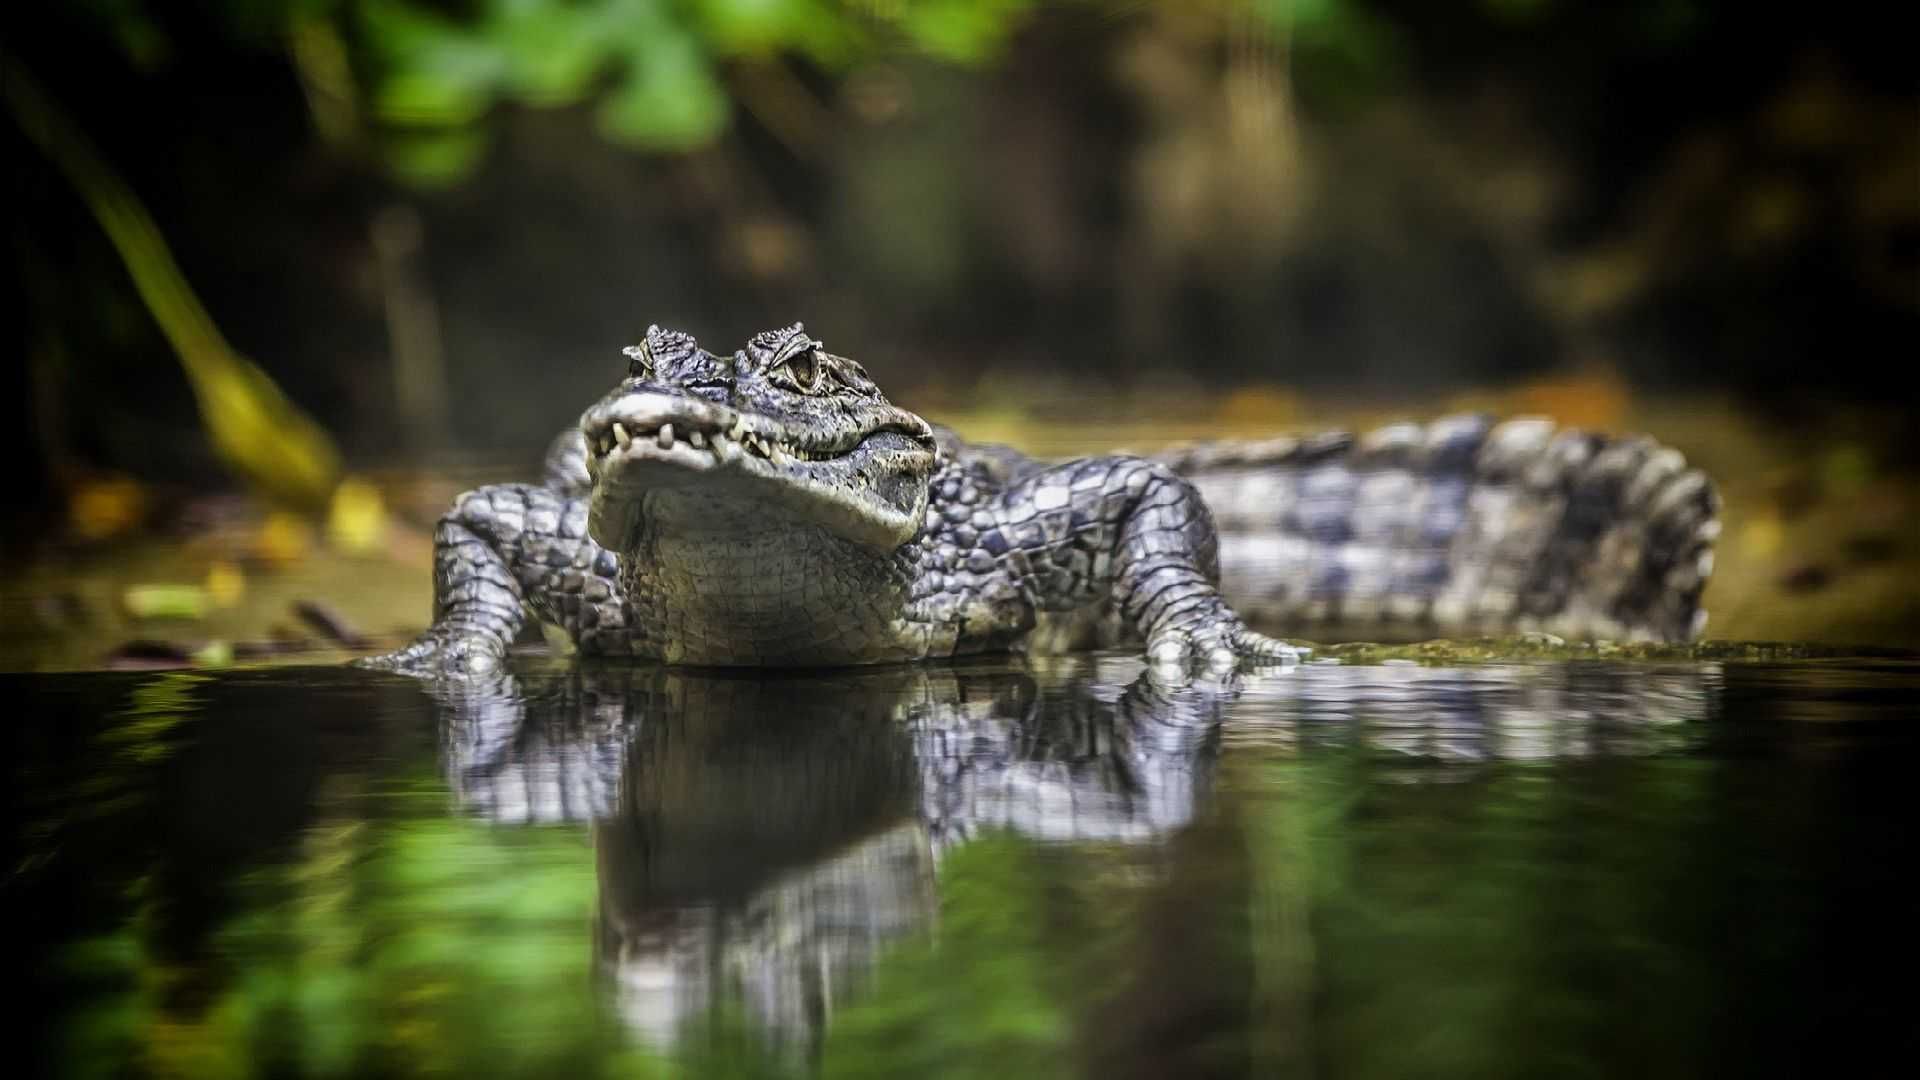 Crocodile wallpaper picture hd